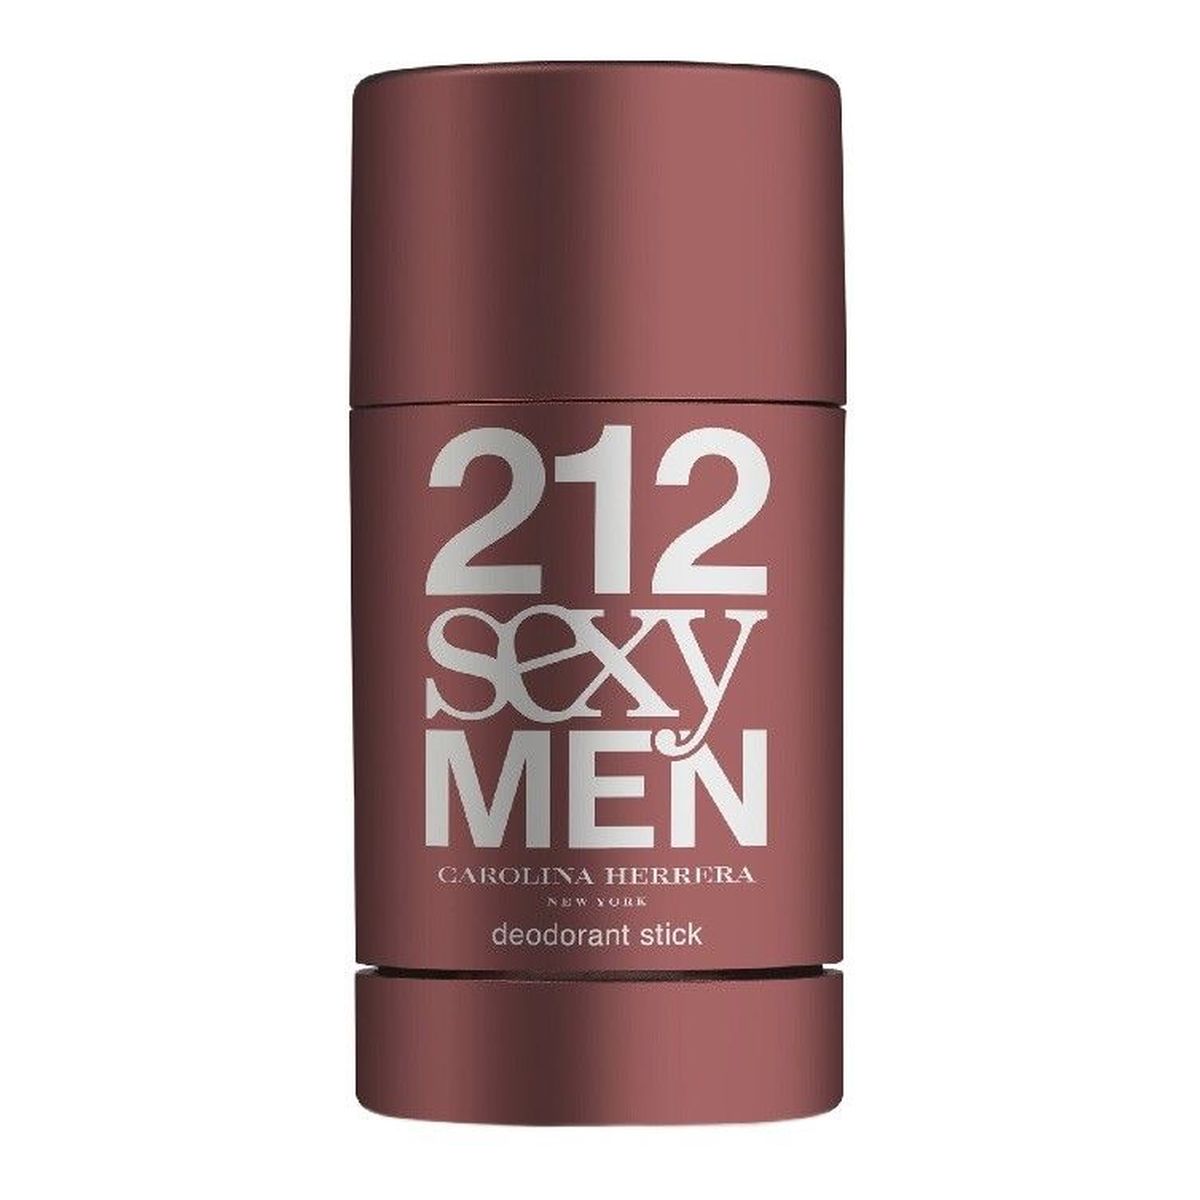 Carolina Herrera 212 Sexy Men Dezodorant sztyft 75ml